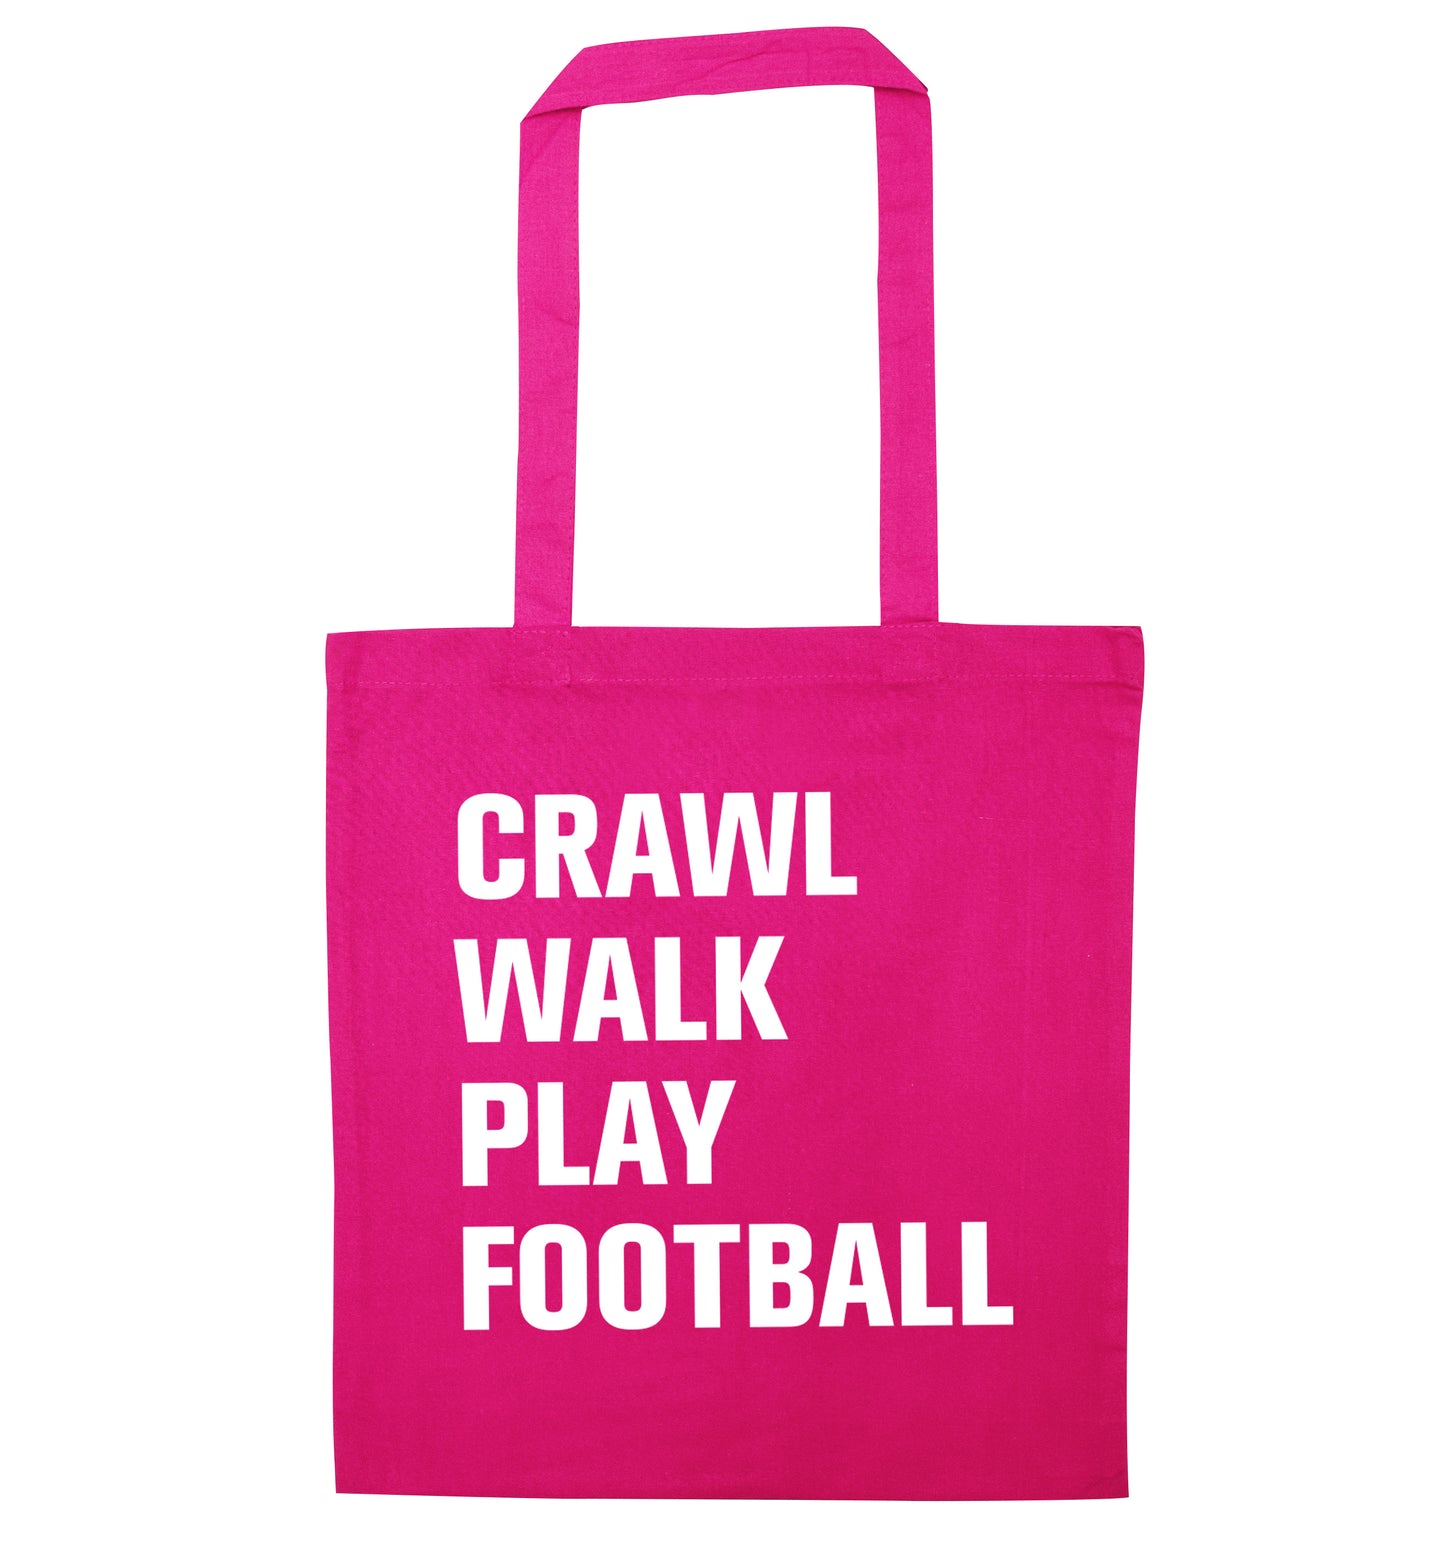 Crawl, walk, play football pink tote bag